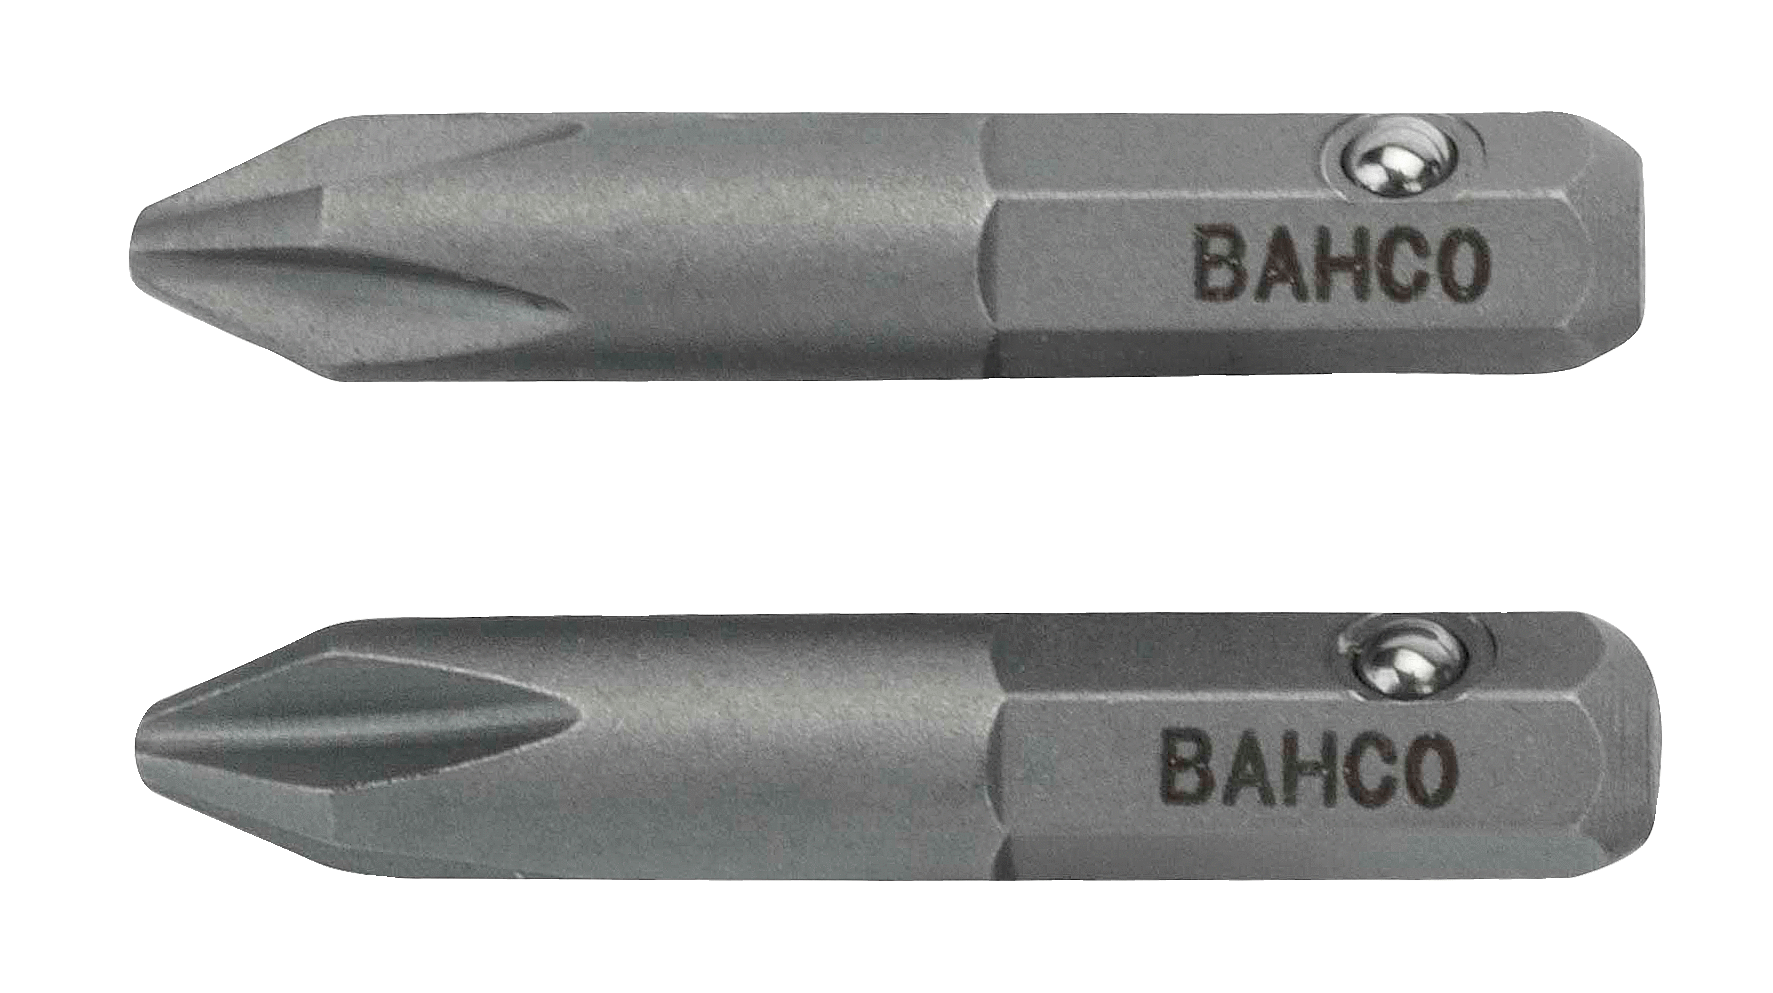 картинка Стандартные биты для отверток 5/32 дюйма Phillips, 25 мм BAHCO 45S/PH1-2P от магазина "Элит-инструмент"